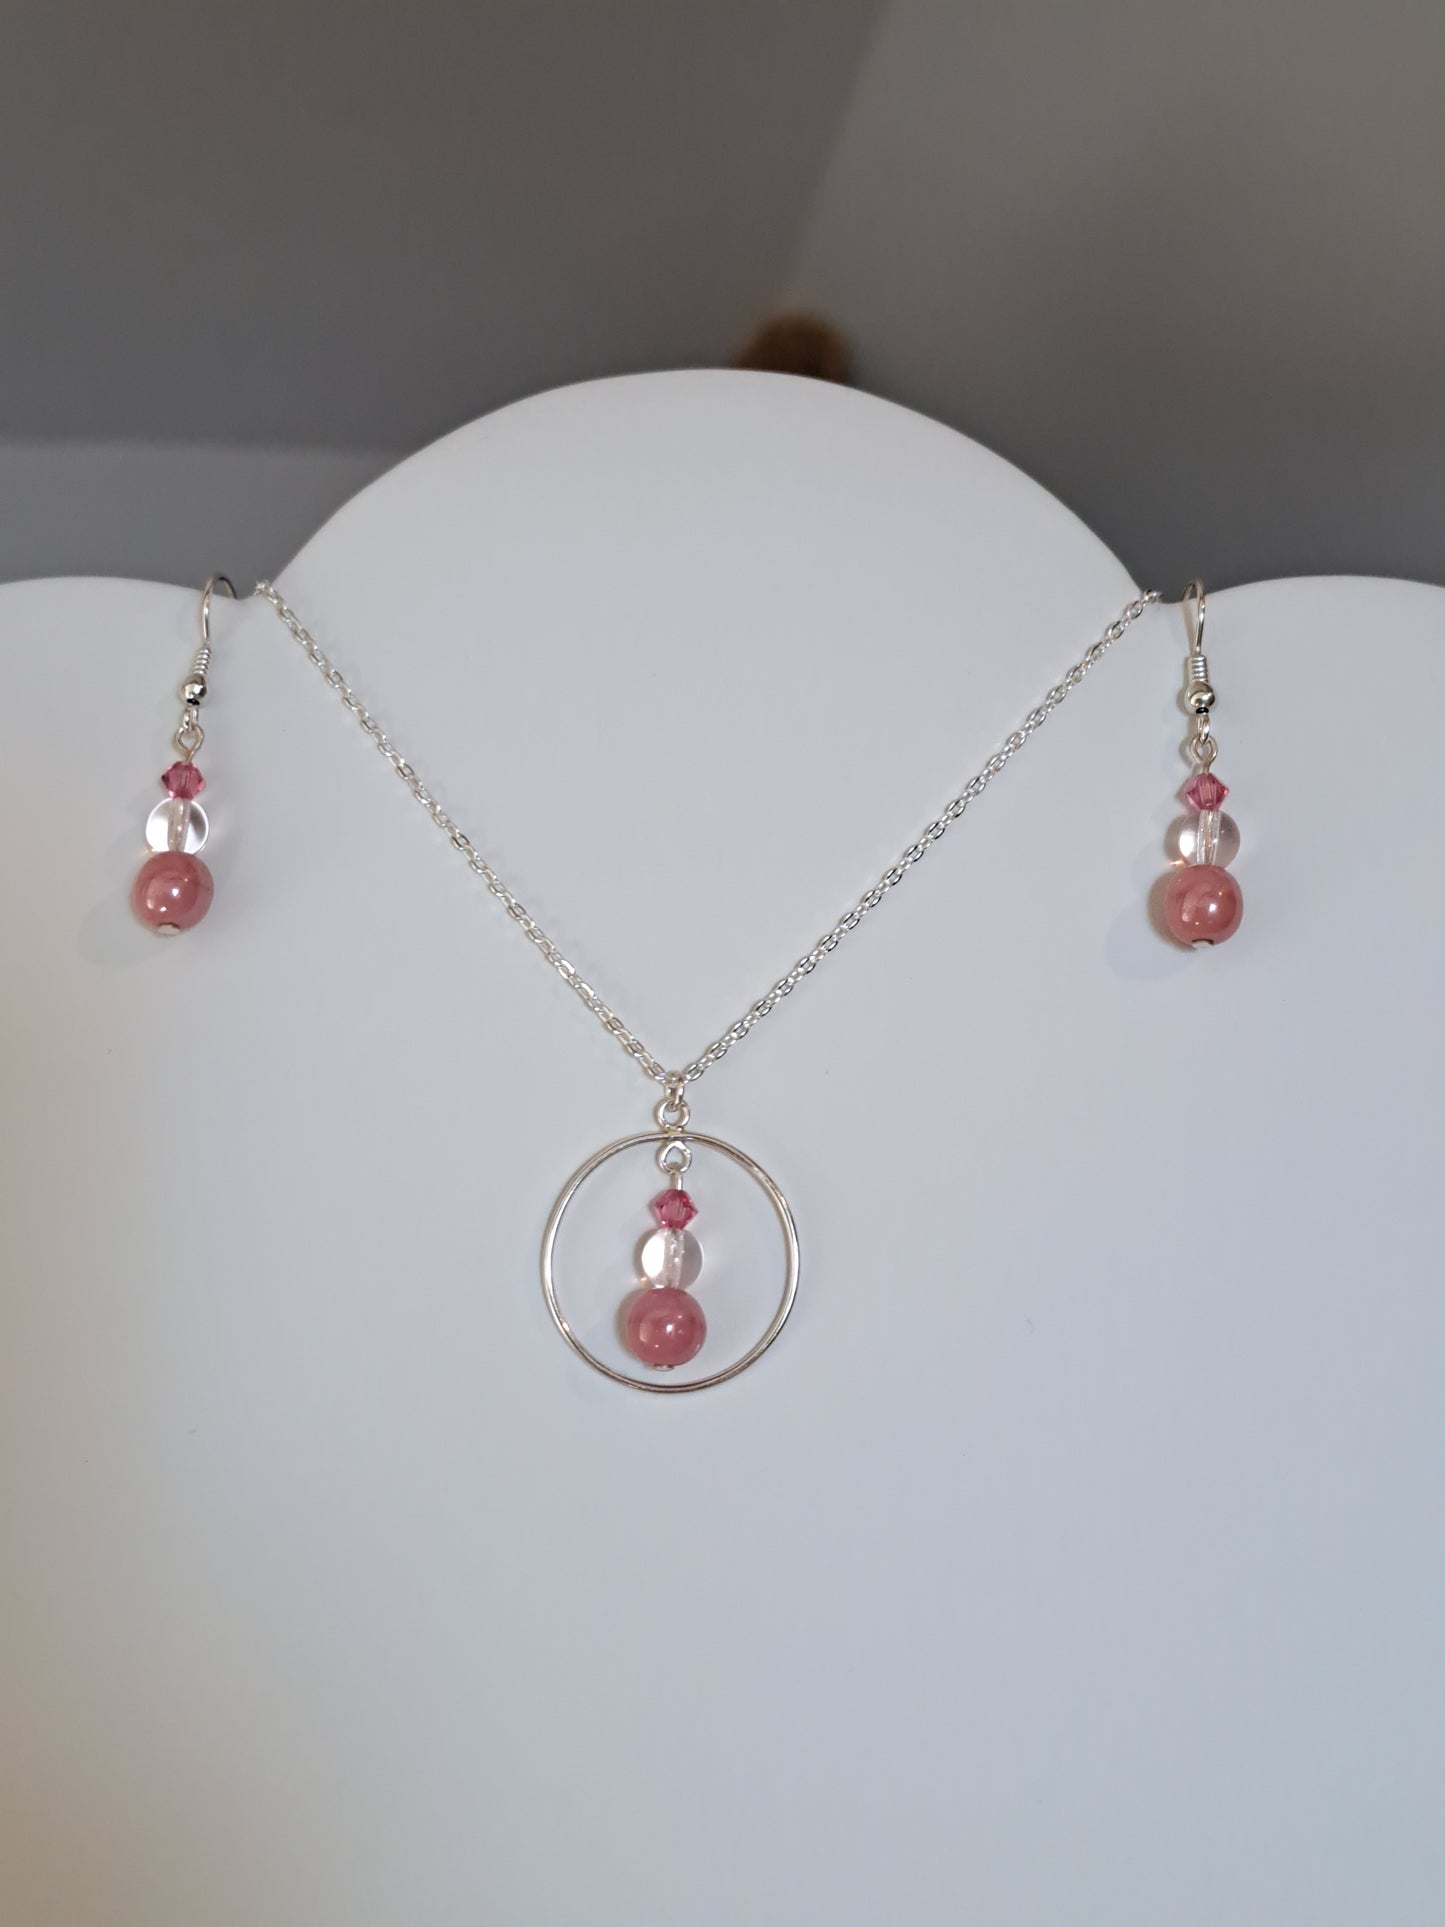 Boucle d'oreilles en argent avec perles roses pour octobre rose